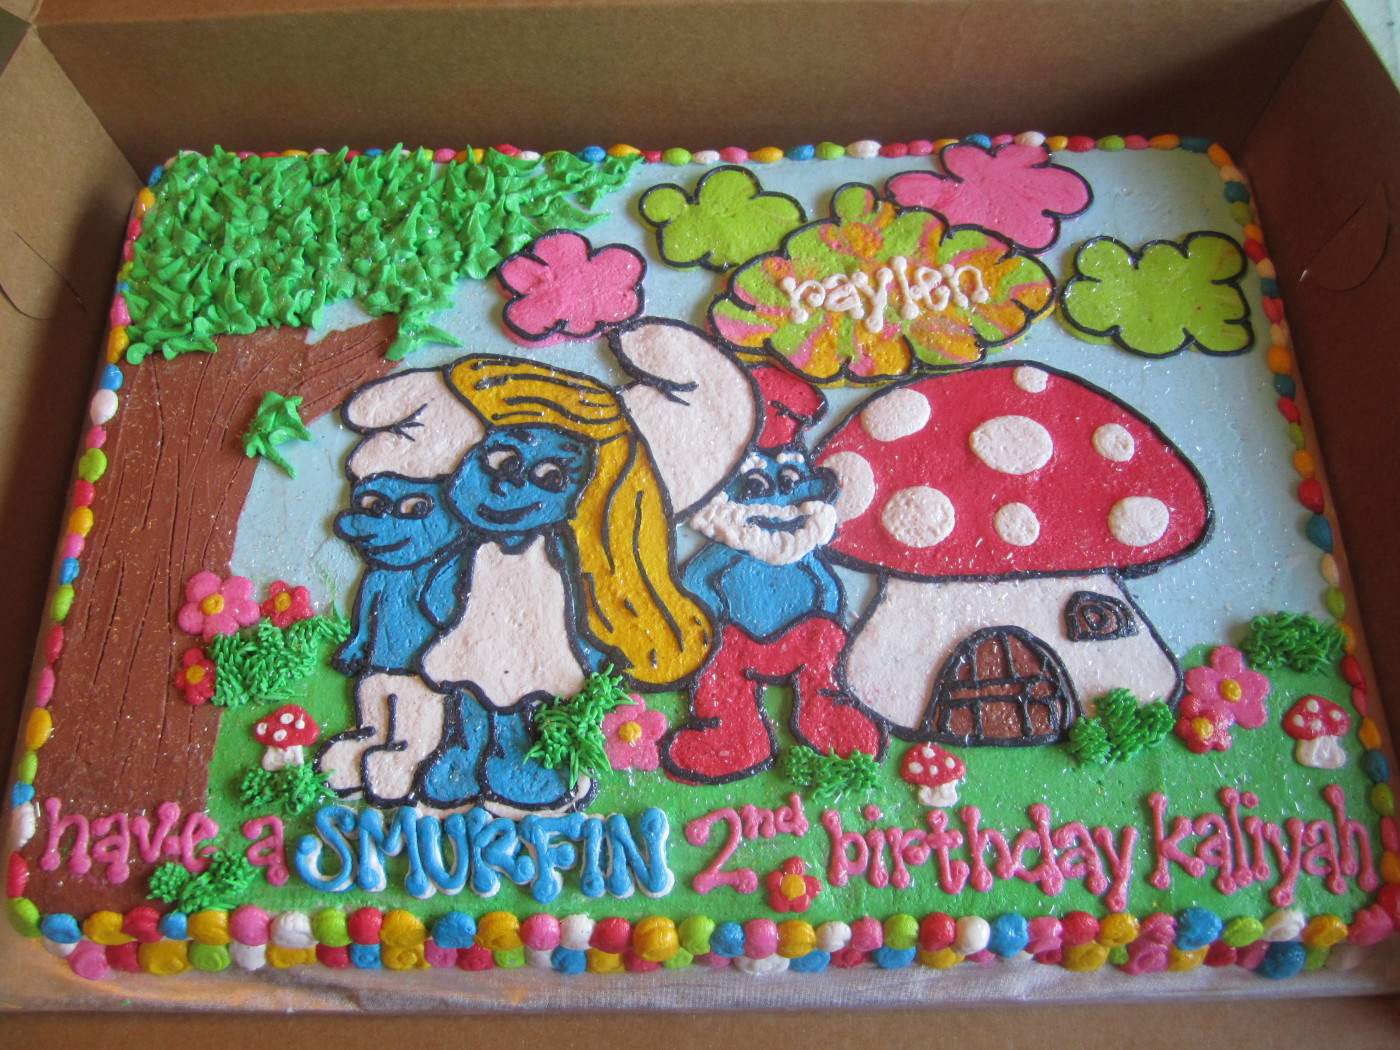 Smurfs Birthday Cake